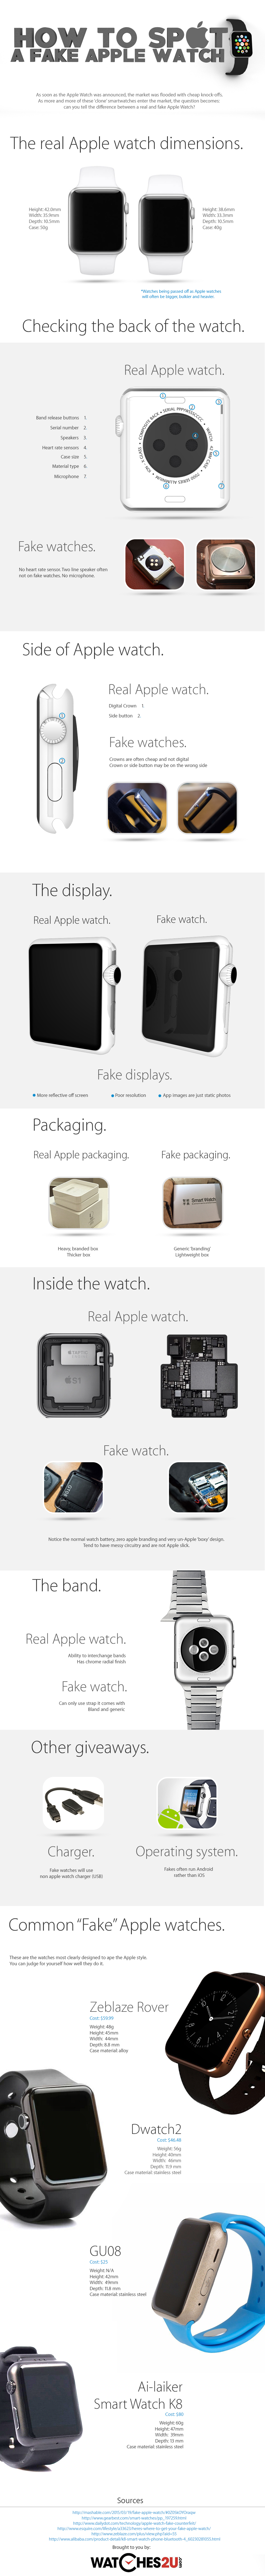 Cómo detectar un Apple Watch falso